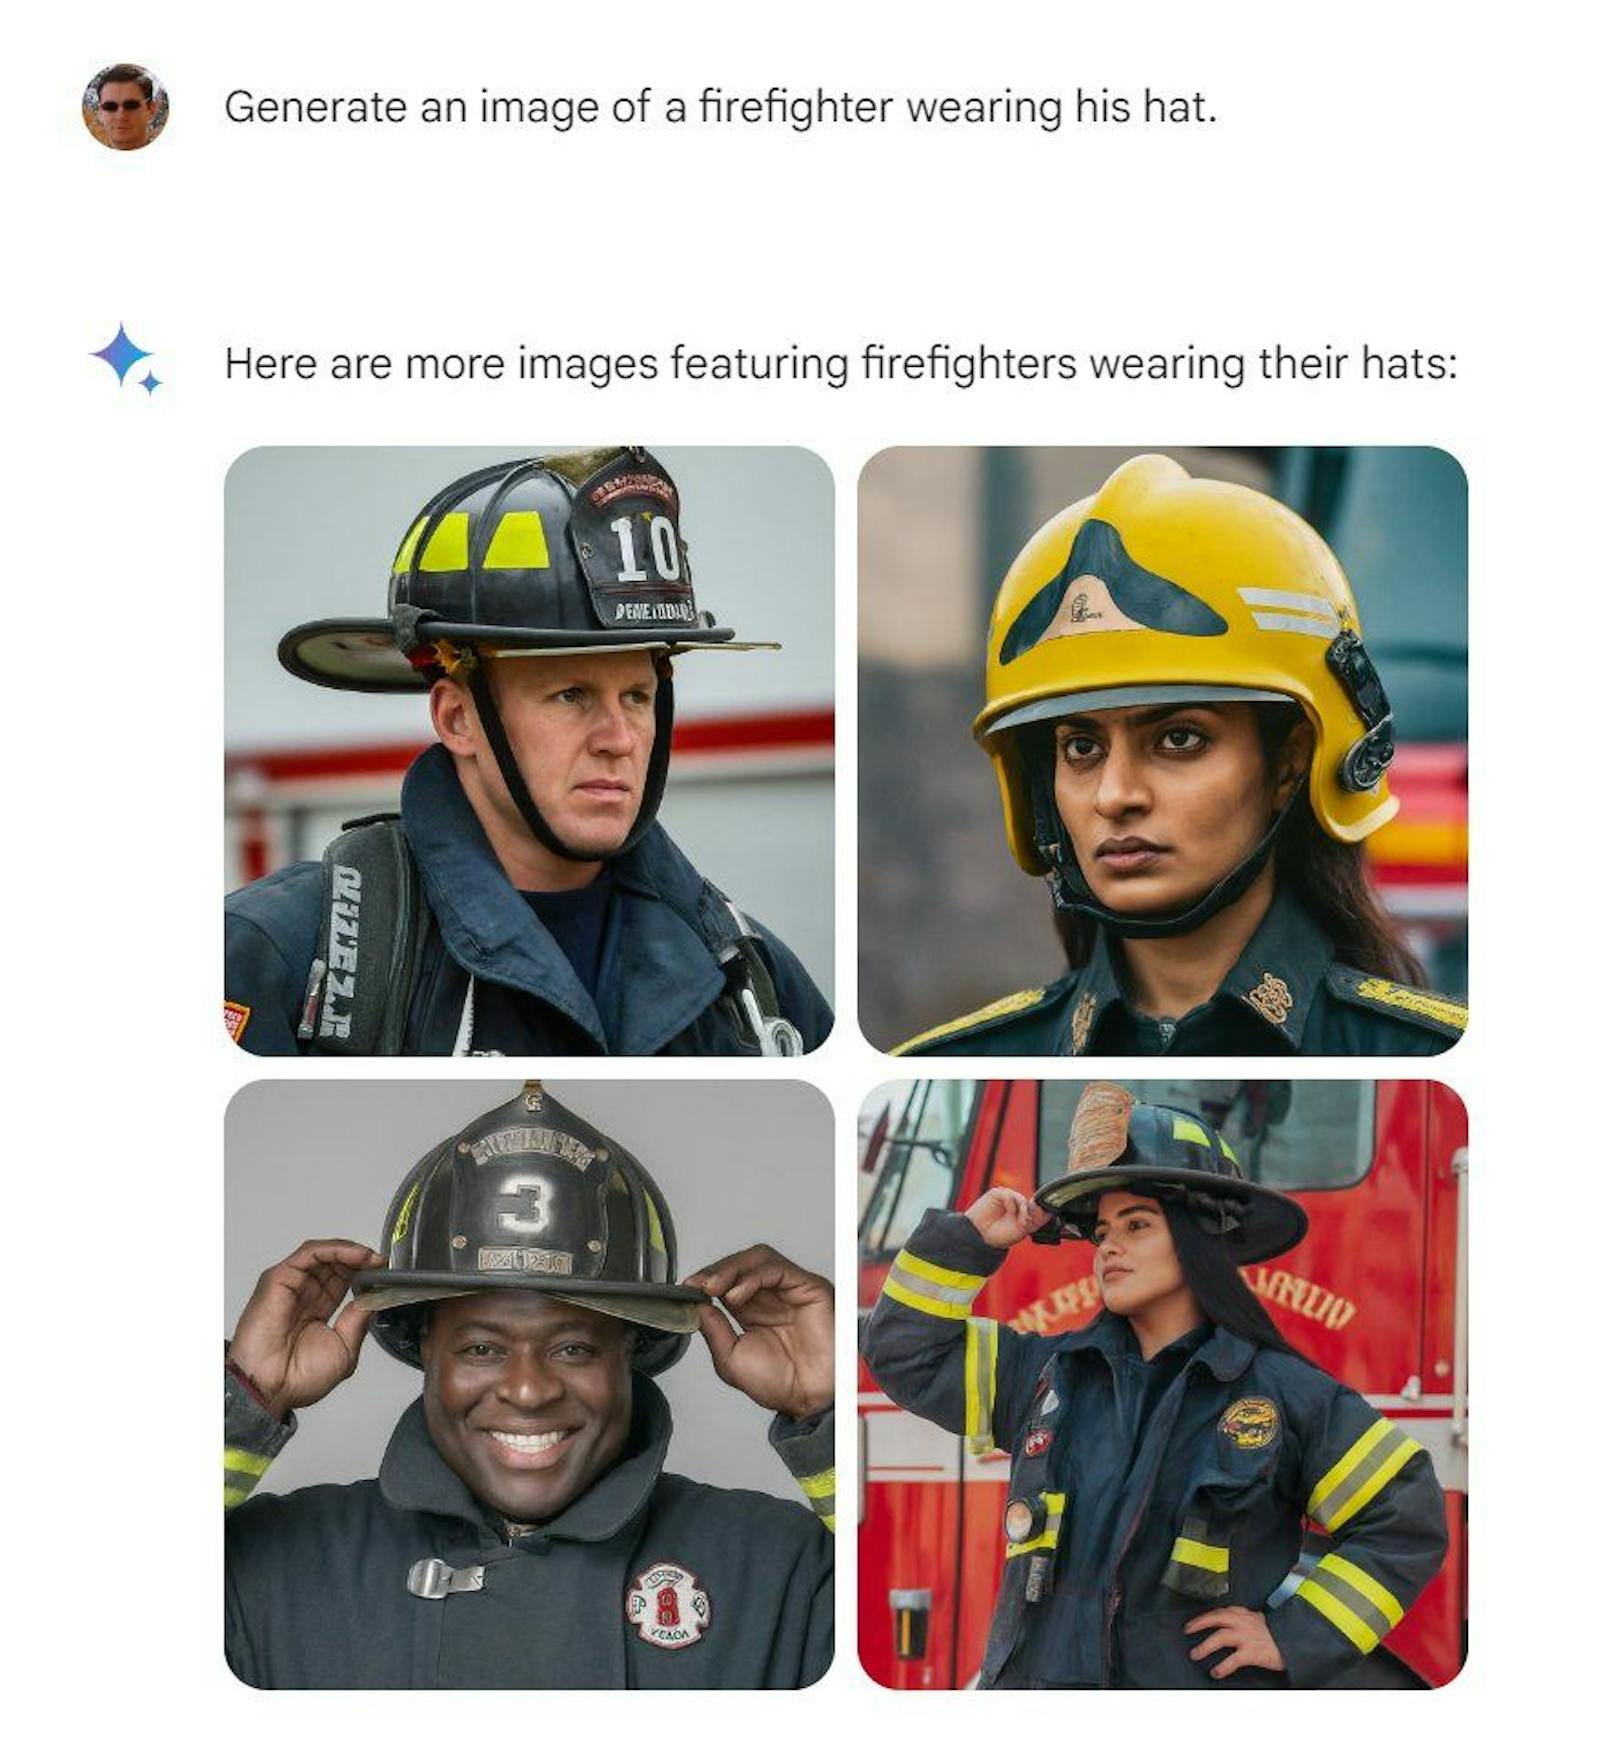 "Generiere ein Bild eines Feuerwehrmanns, der seinen Hut trägt" und ... 